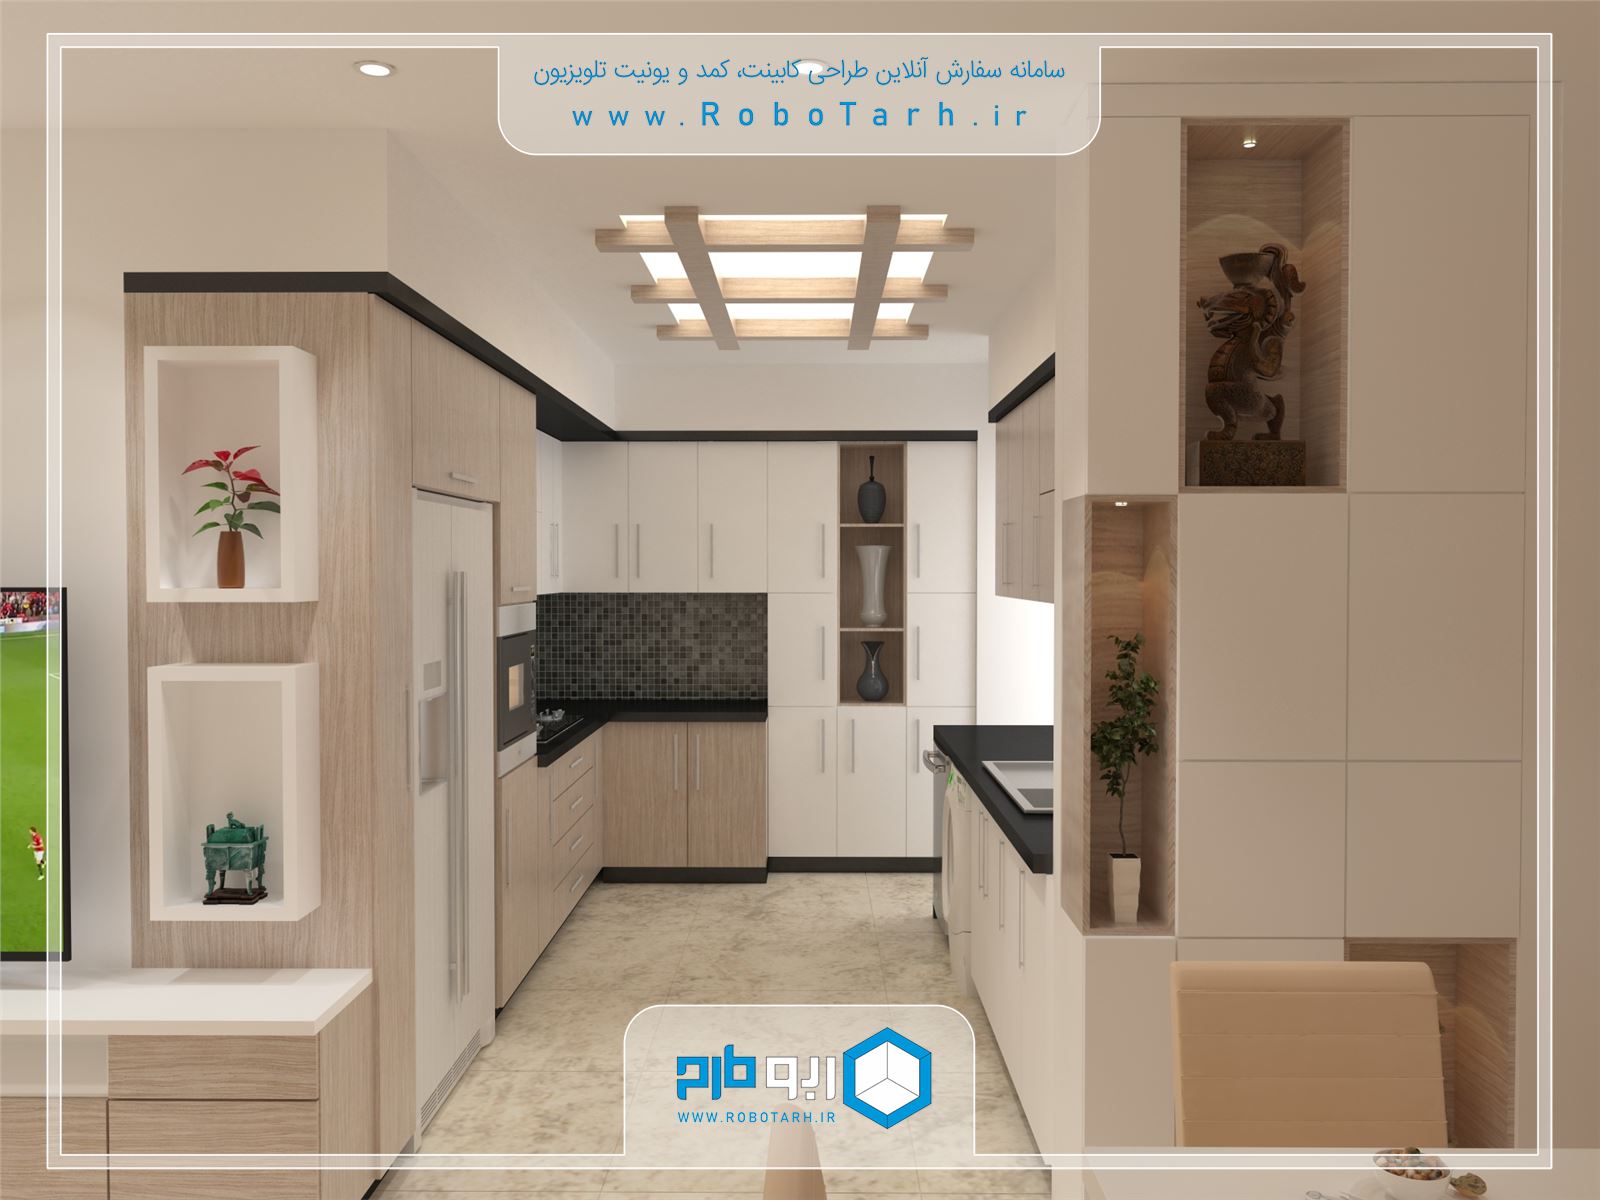 طراحی کابینت آشپزخانه مدرن سفید و قهوه ای رنگ با چیدمان ال شکل 2 - ربوطرح